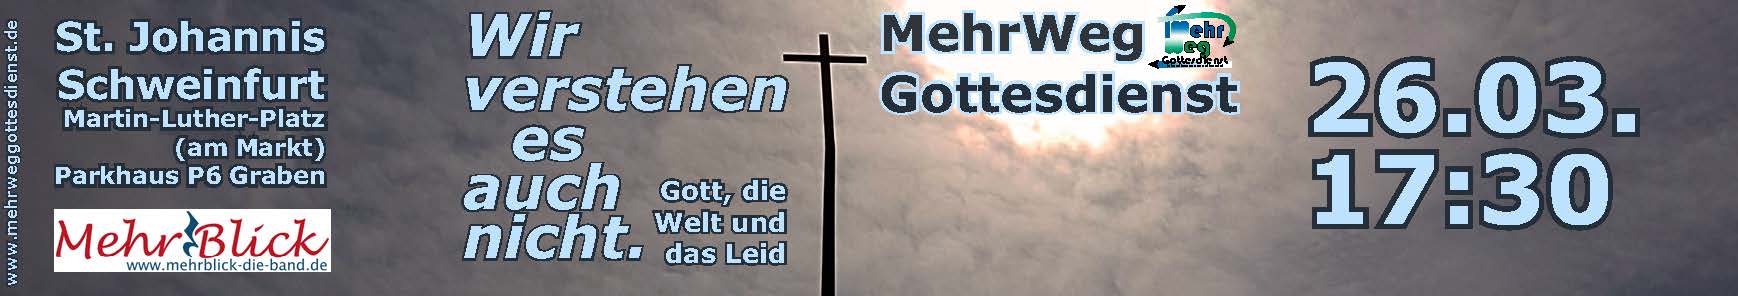 Banner: MehrWegGottesdienst